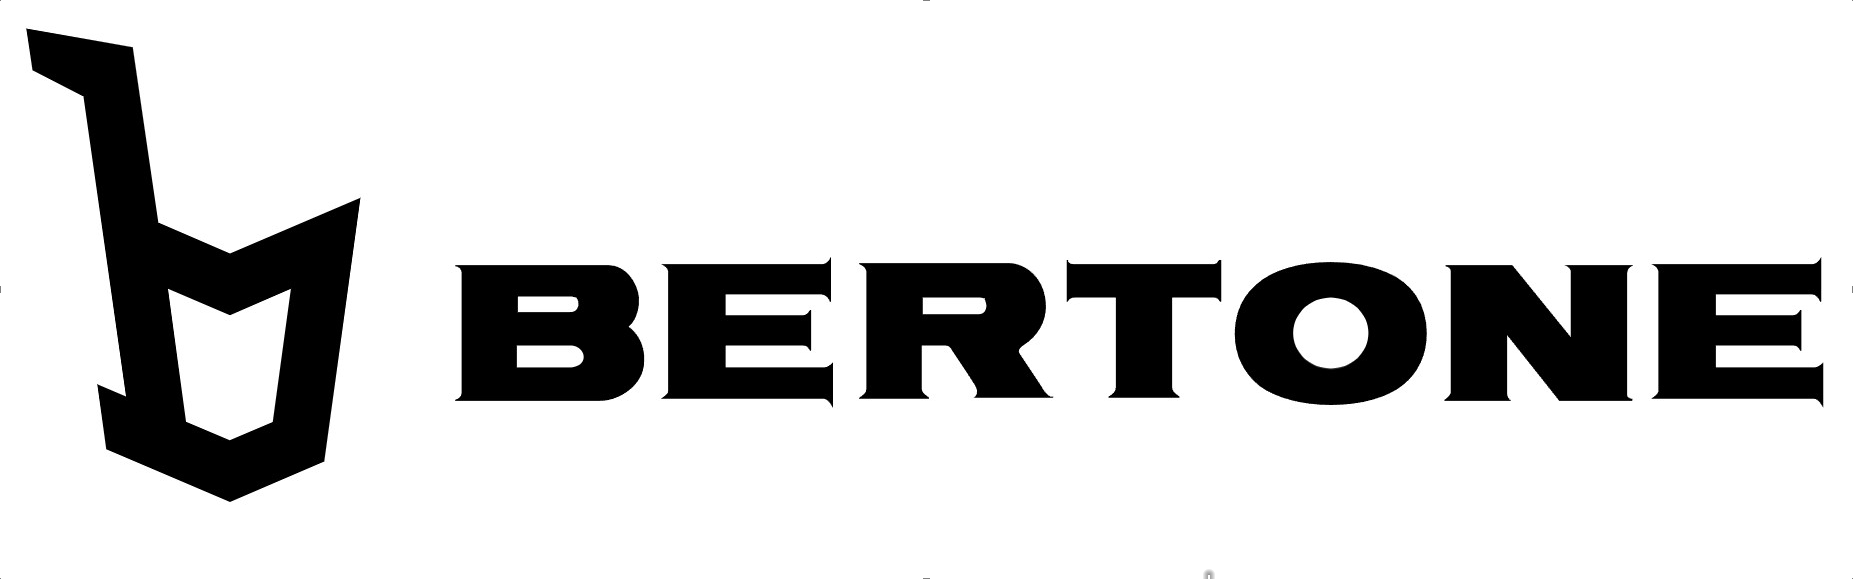 Bertone logo image